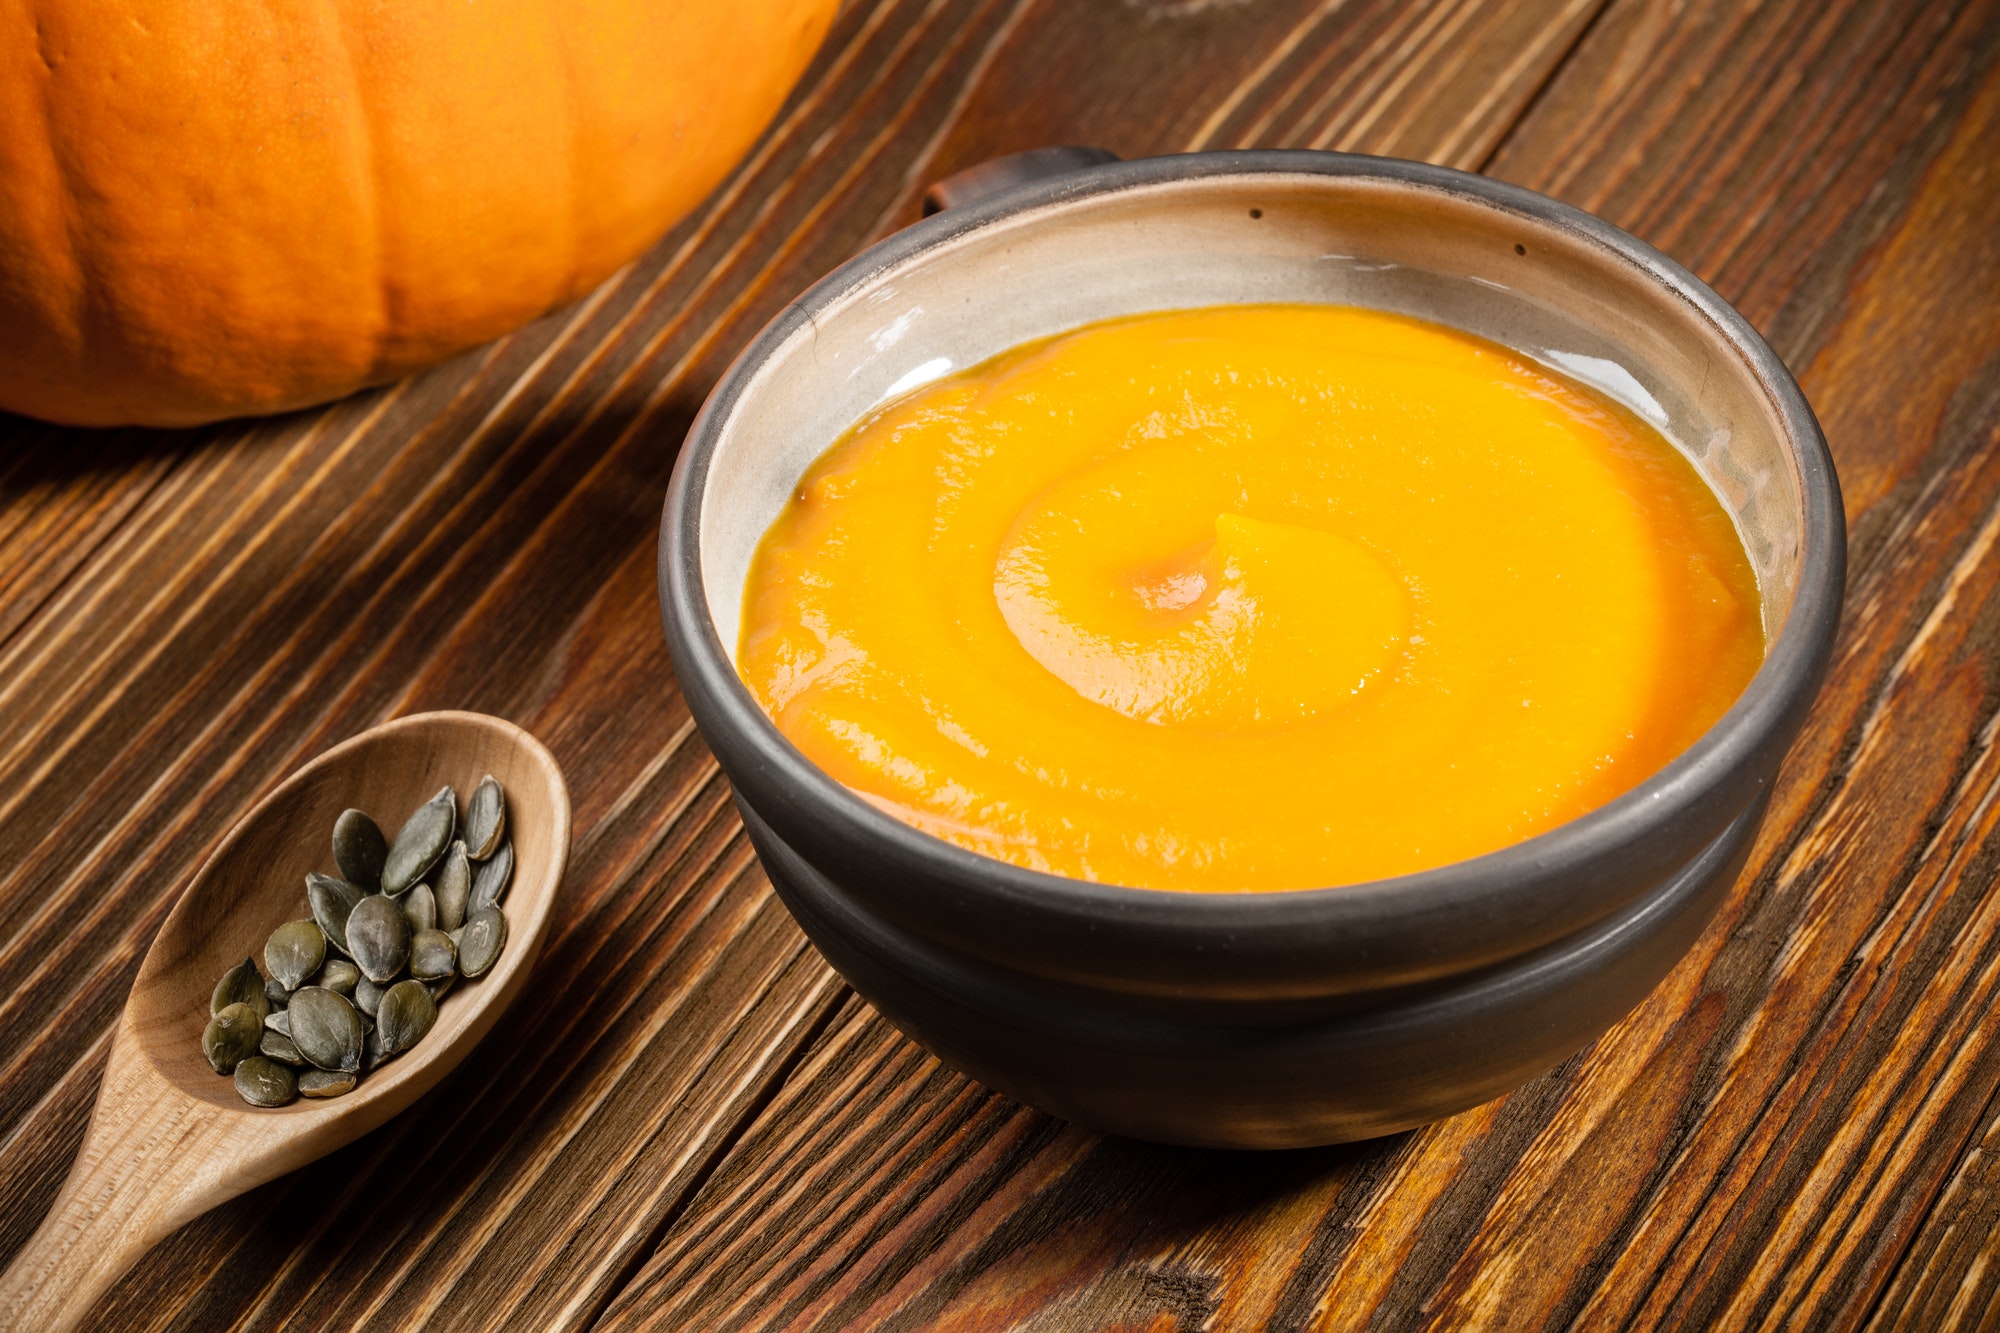 Pumpkin soup, pumpkin seeds on wooden table